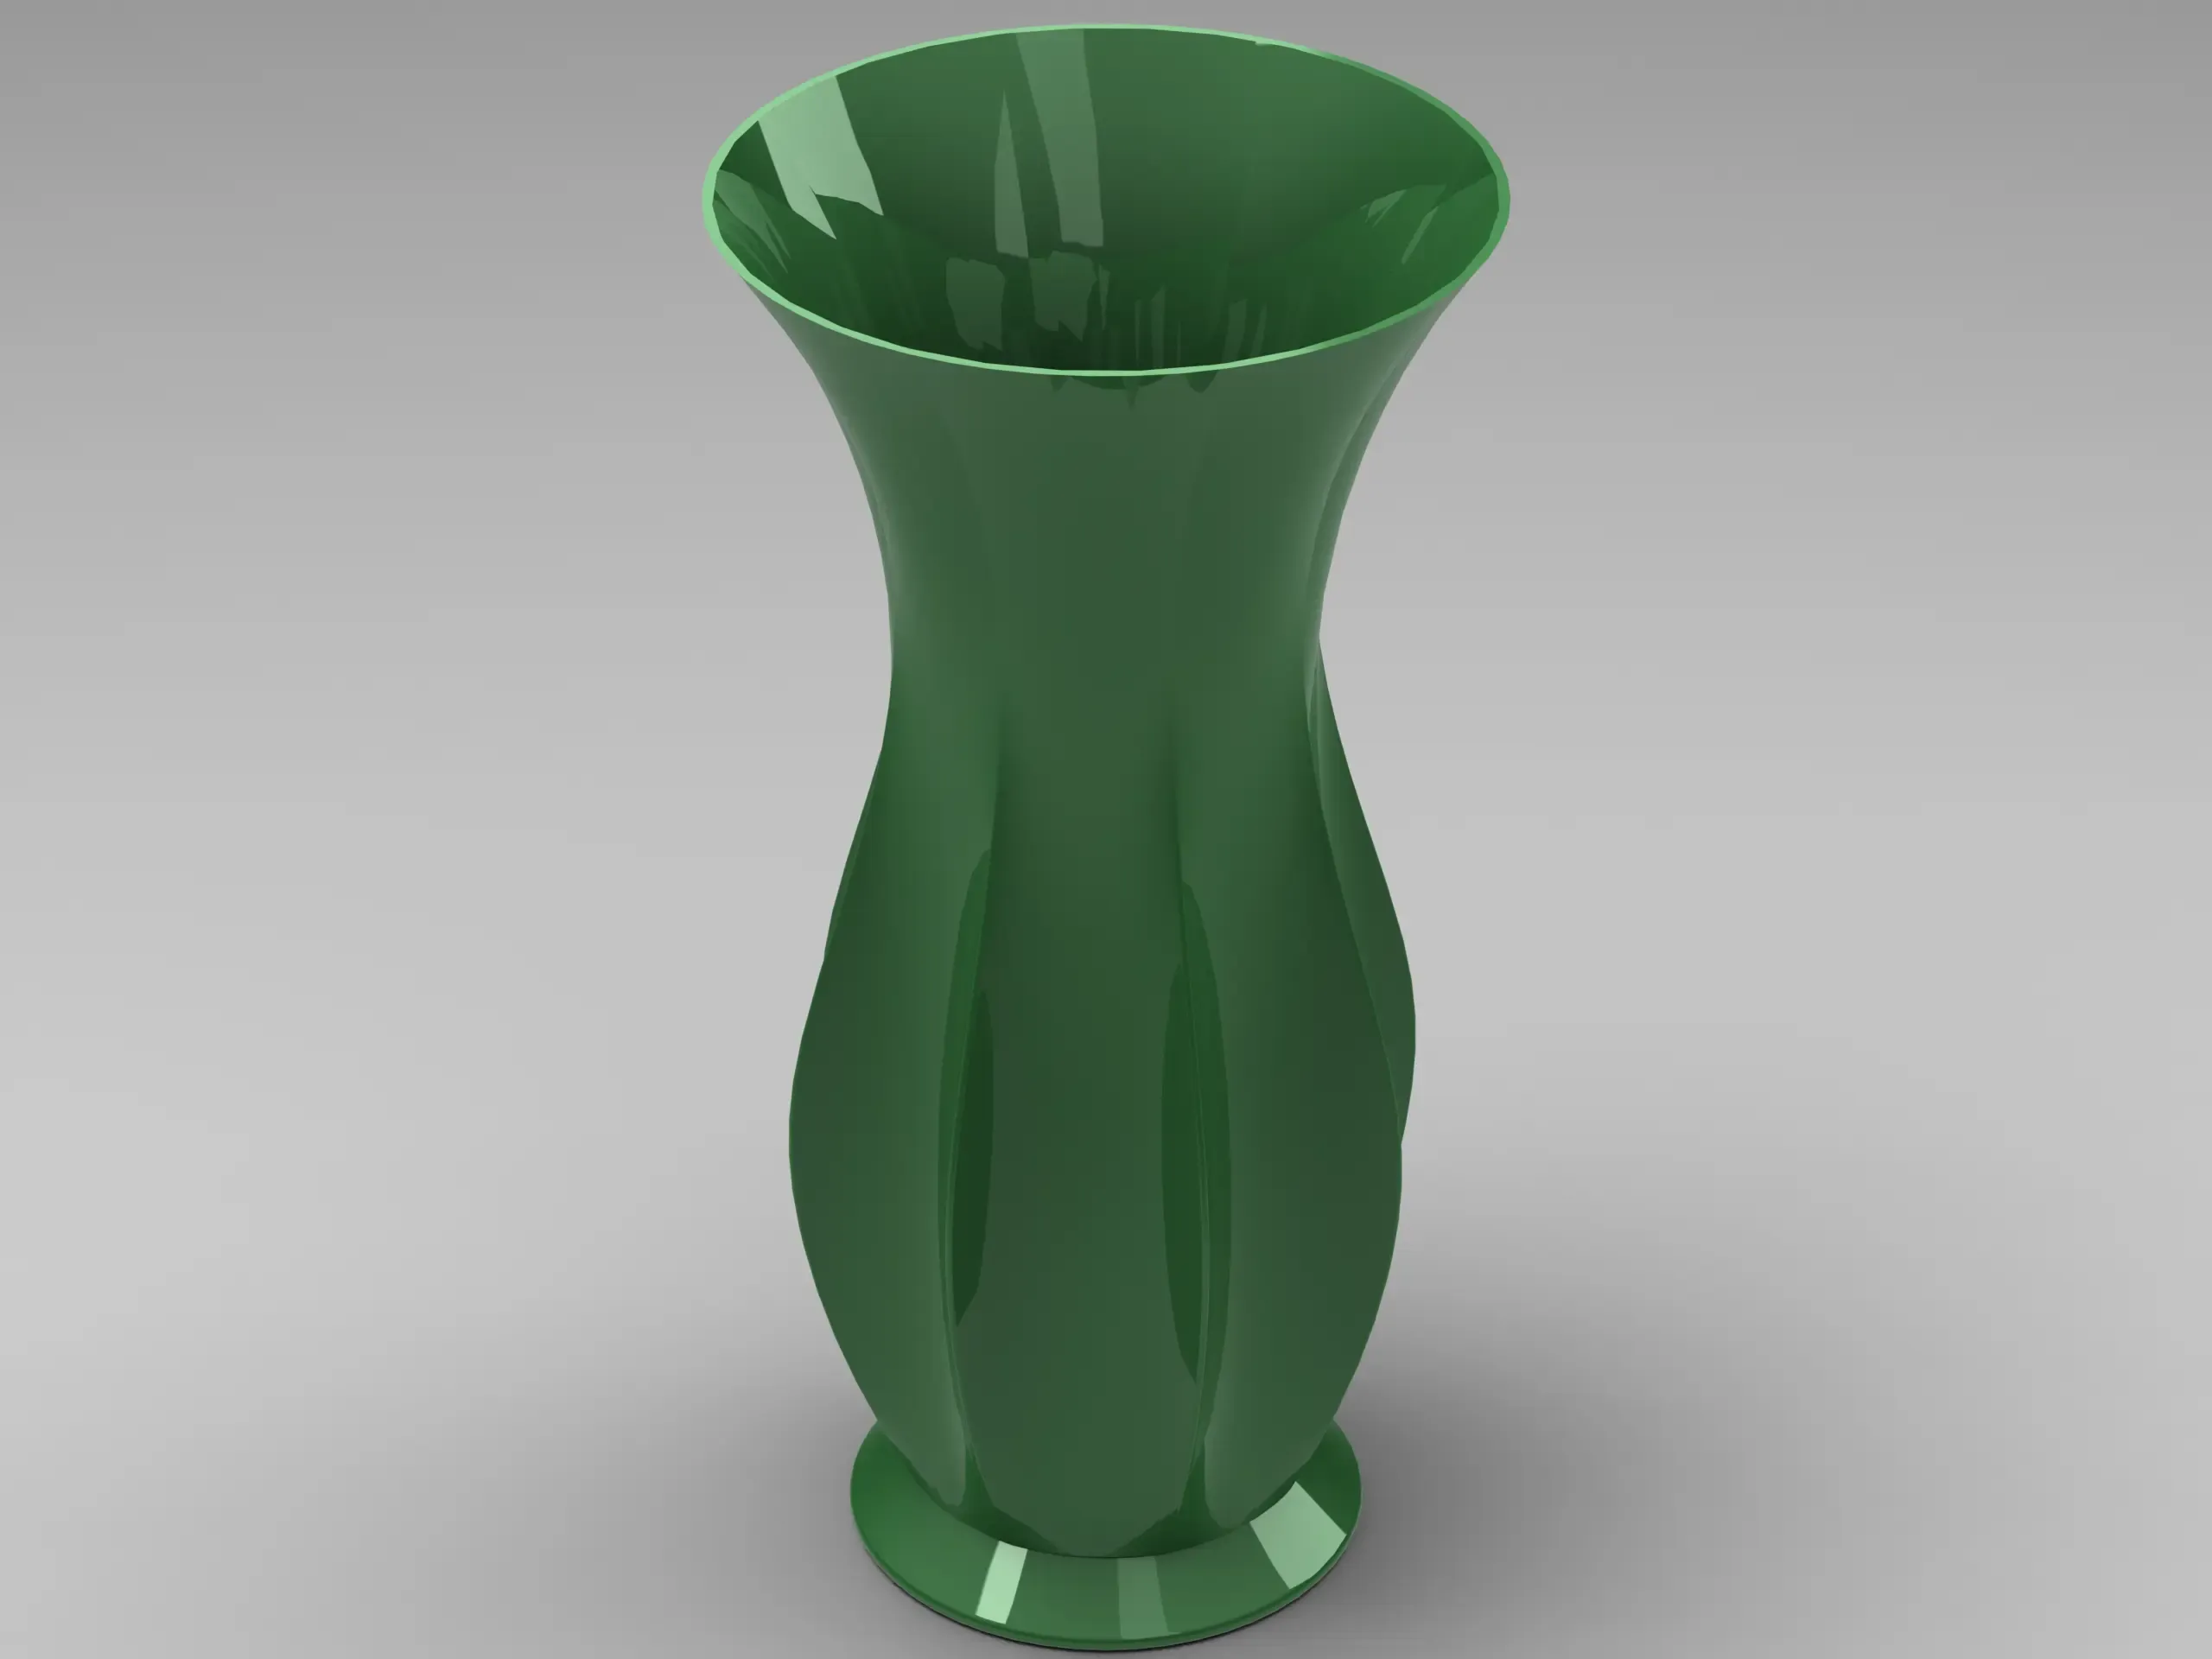 Green Plastic Vases For Flowers